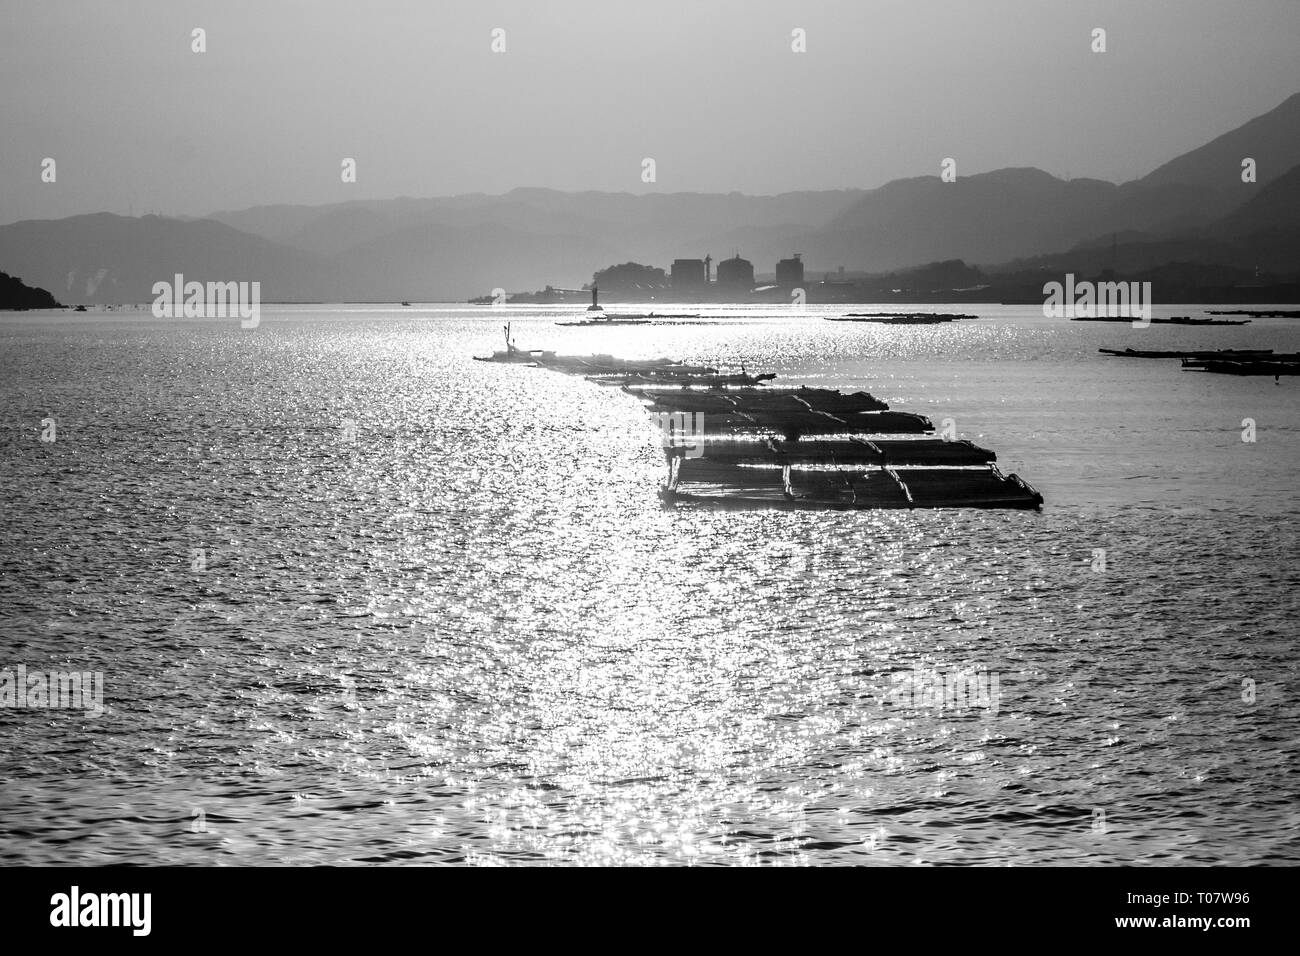 Fattoria di Pesce di prima mattina vicino all'isola di Miyajima, Giappone. Immagine in bianco e nero Foto Stock